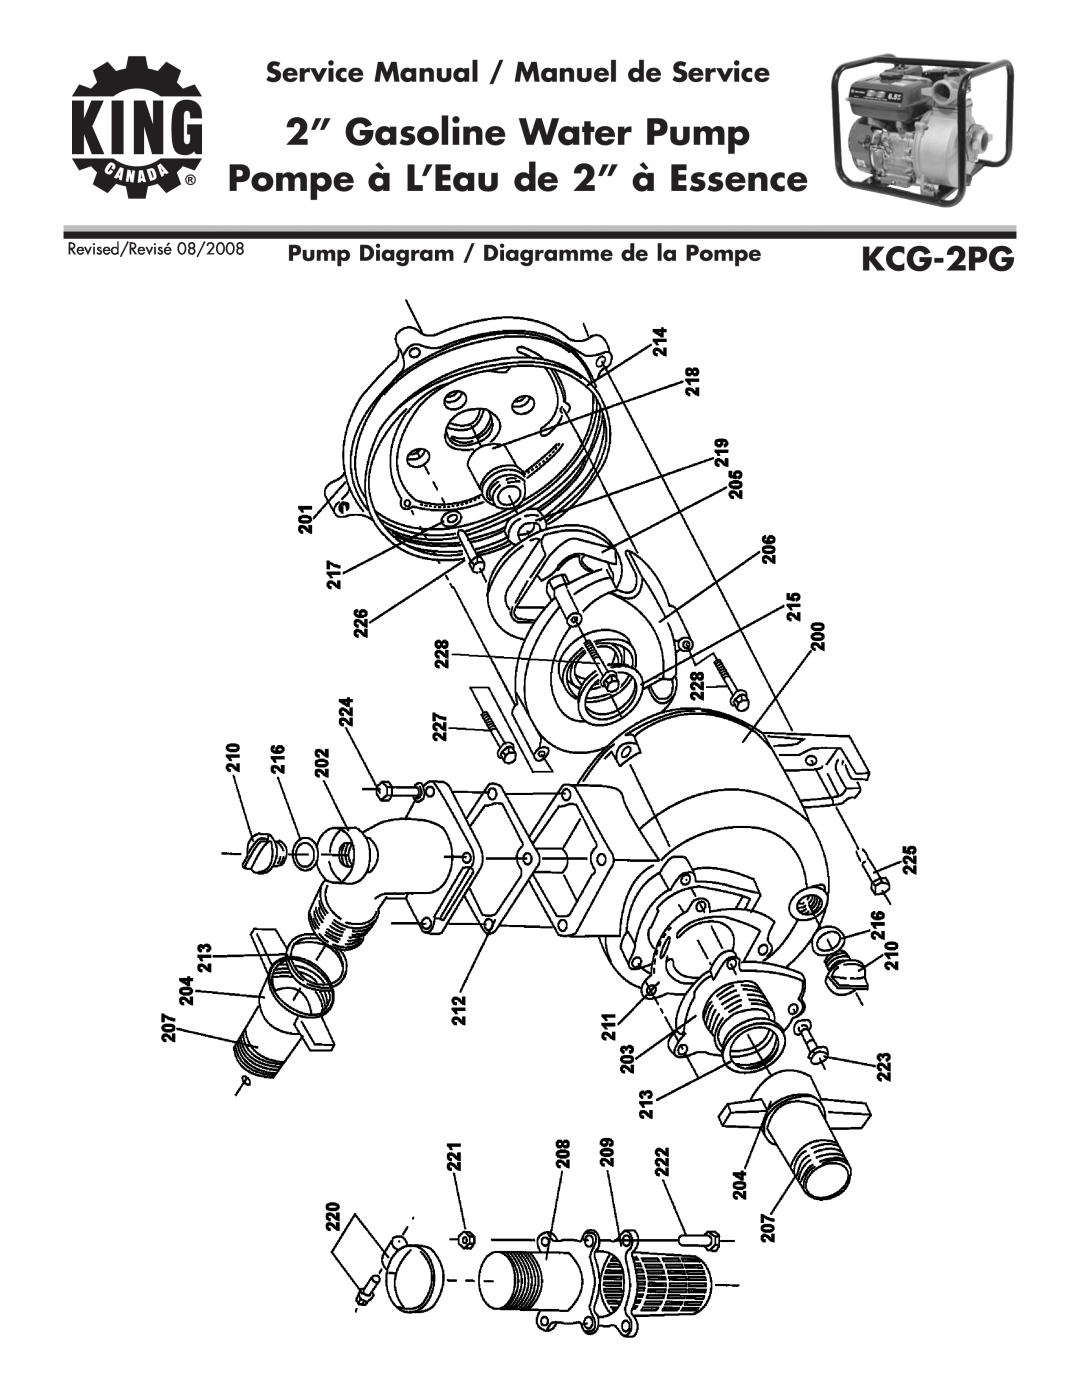 King Canada KCG-2PG Pump Diagram / Diagramme de la Pompe, 2” Gasoline Water Pump, Pompe à L’Eau de 2” à Essence 